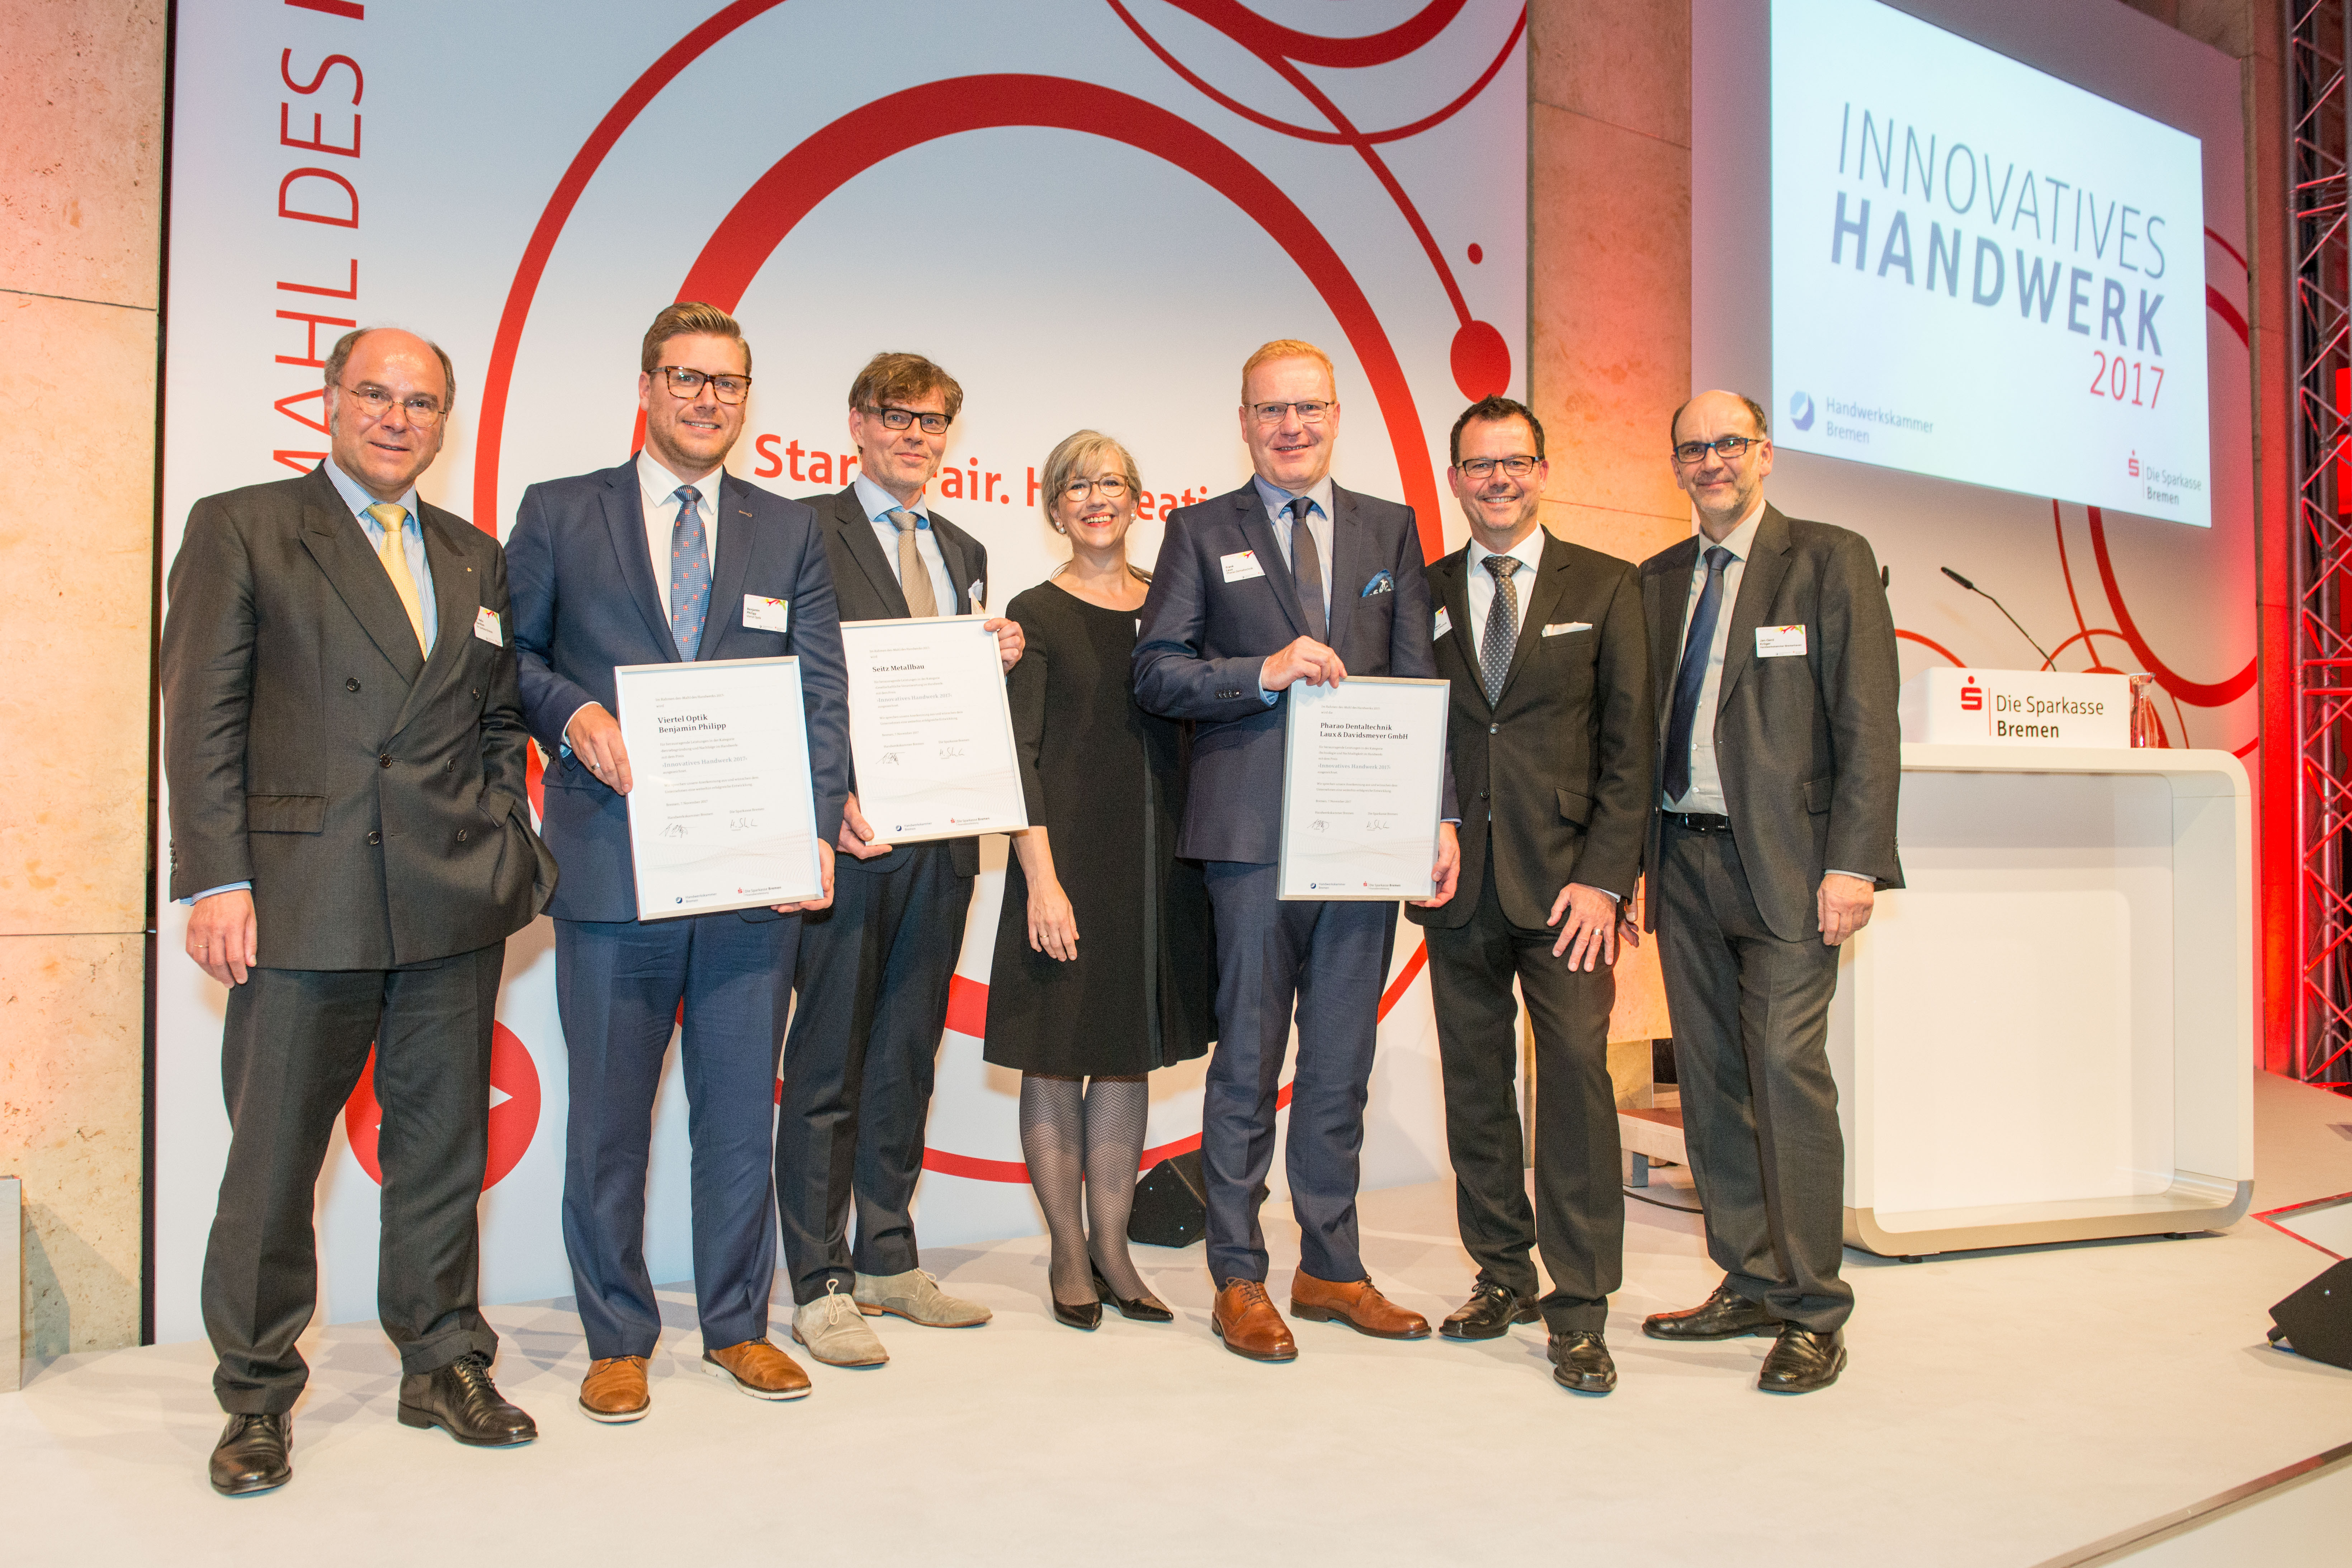 Handwerk Bremen
 Mahl des Handwerks 2017 Preis für "Innovatives Handwerk